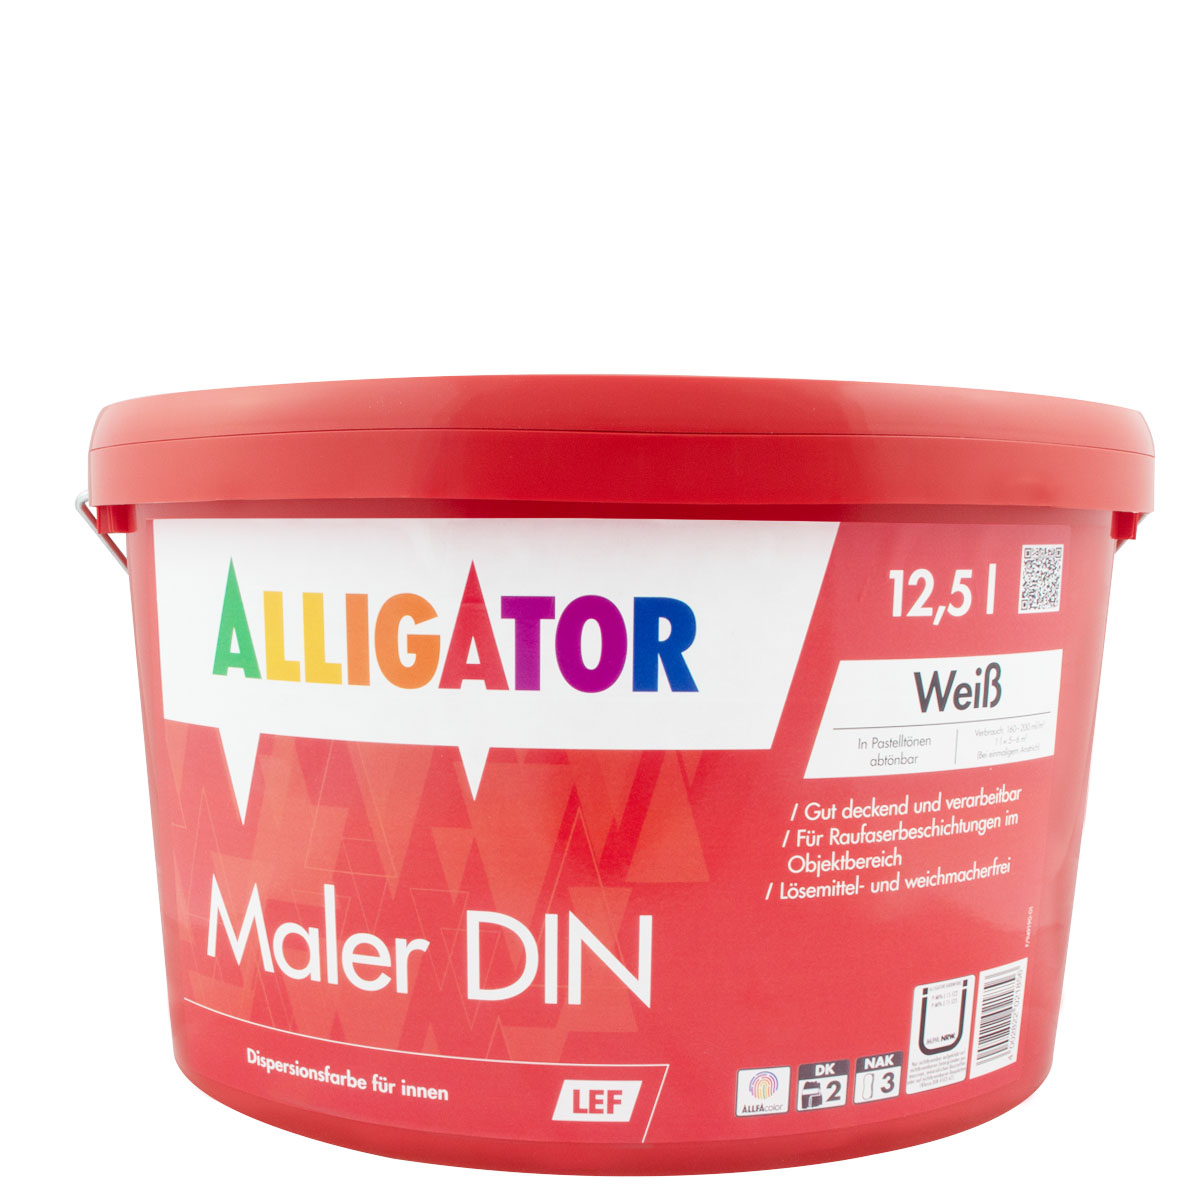 Alligator spachtel - Die TOP Produkte unter der Vielzahl an analysierten Alligator spachtel